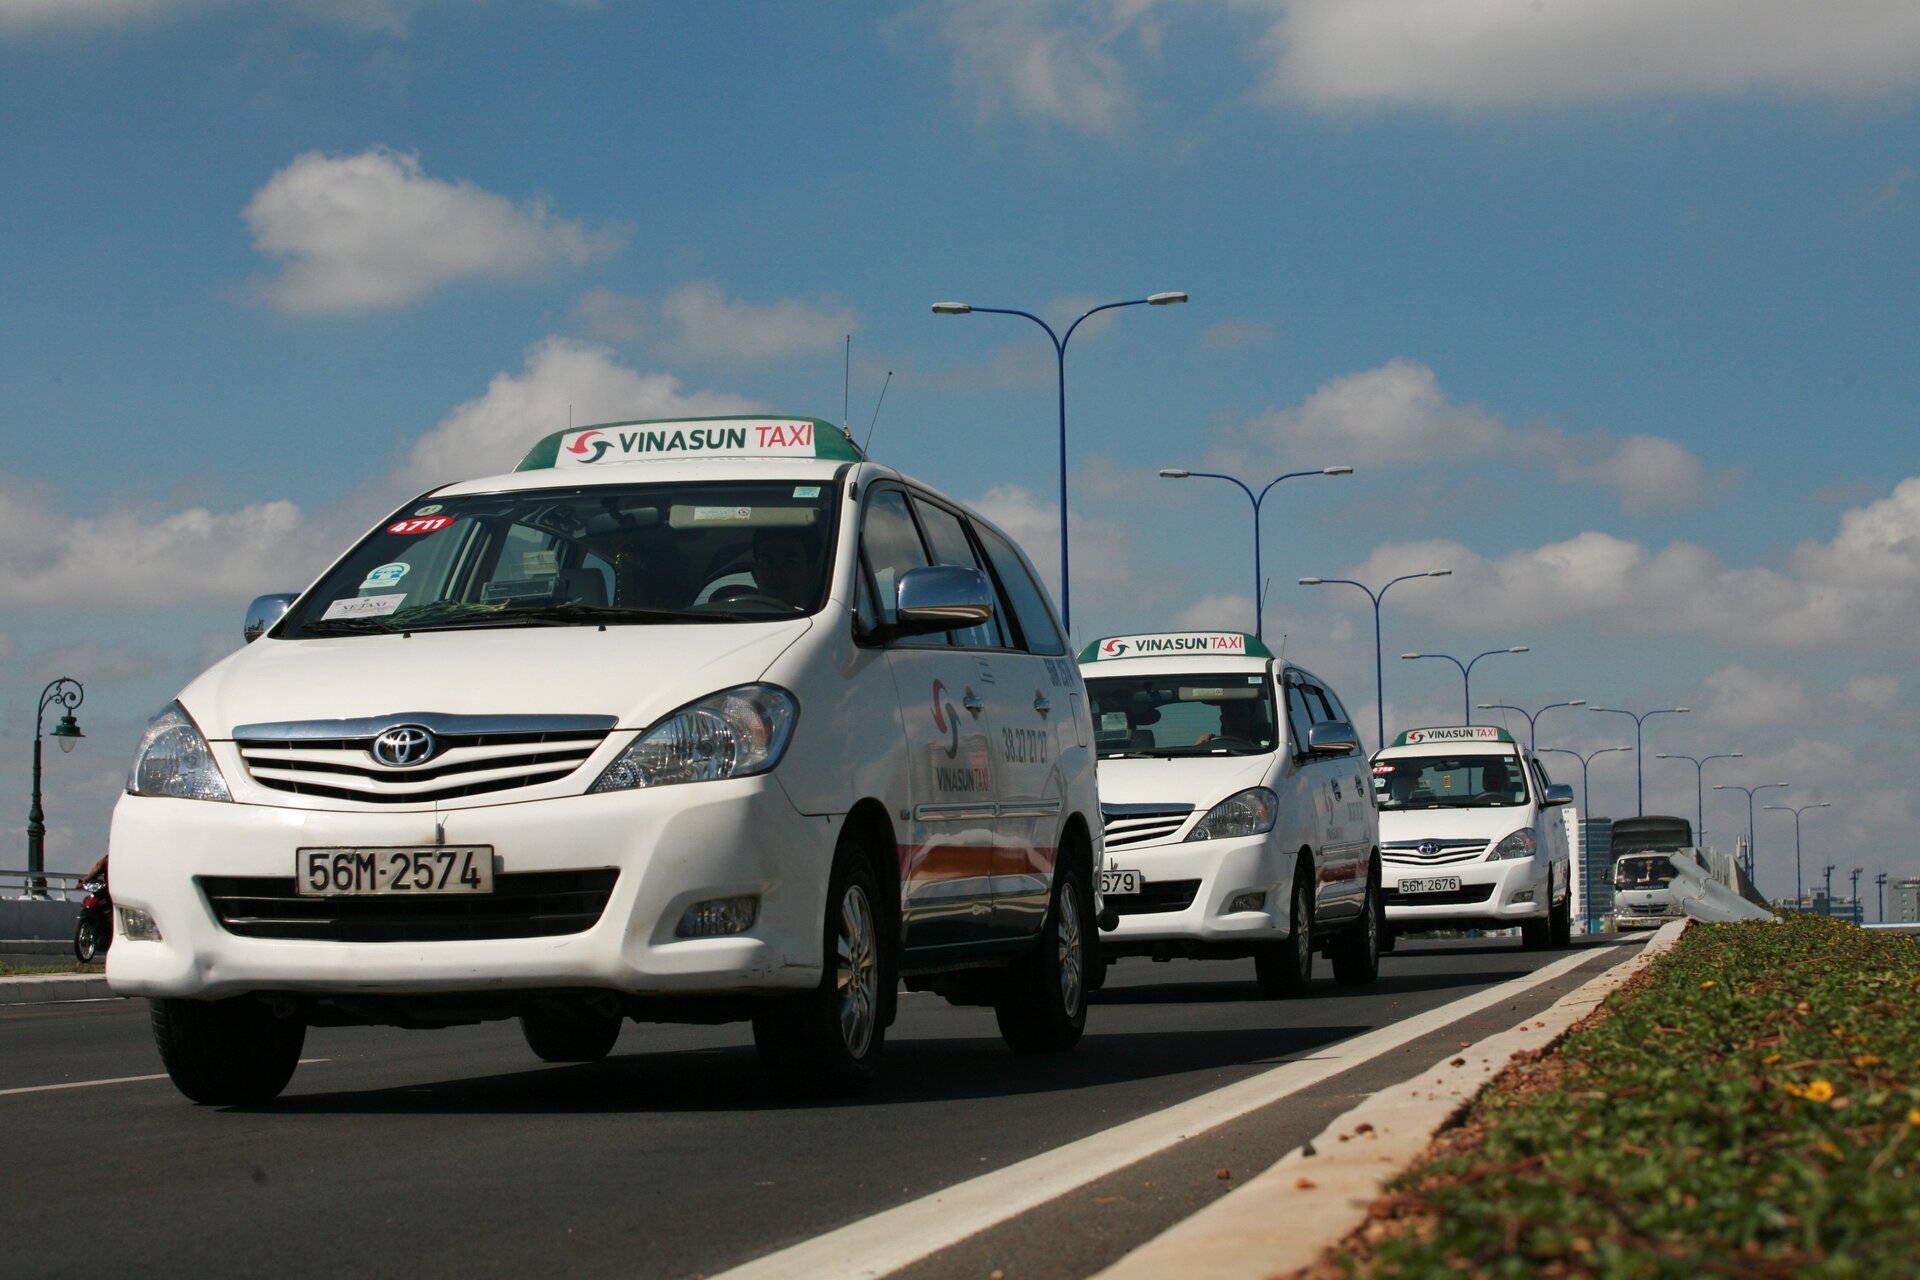 Vinasun taxi trải qua một năm 2022 thành công với mức lợi nhuận tăng gần 8 lần so với kế hoạch đề ra